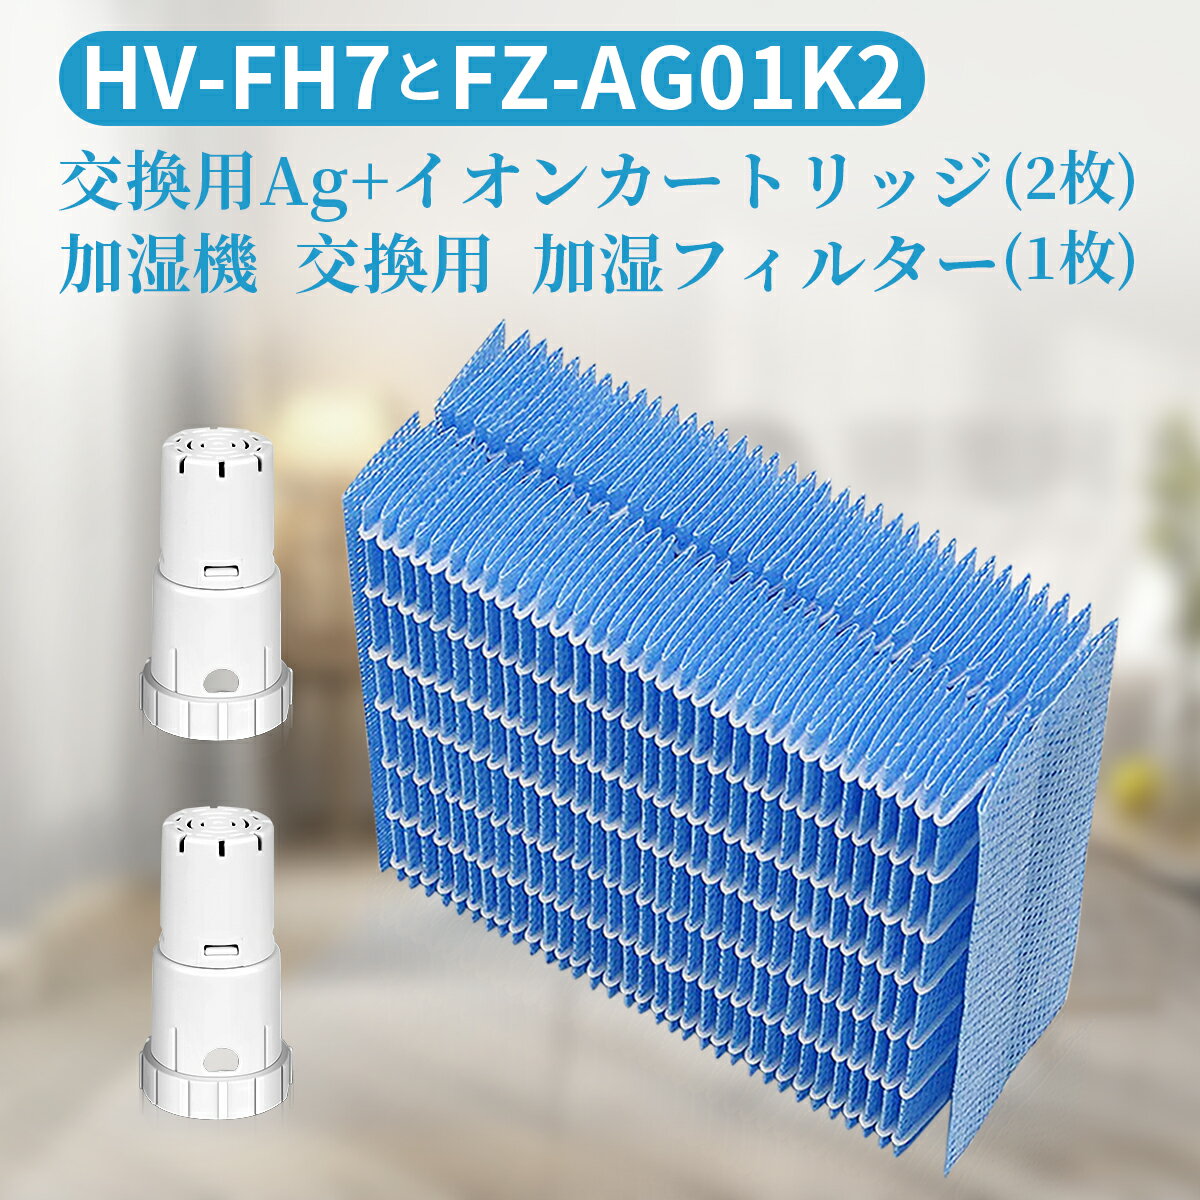 シャープ互換品 加湿フィルター HV-FH7 加湿器 フィルター hv-fh7 ag+イオンカートリッジ FZ-AG01K2 fz-ag01k1 気化式加湿機 HV-H55 HV-H75 HV-J55 HV-J75 HV-L75 HV-L55 HV-H55E6 交換用 (1セット入)